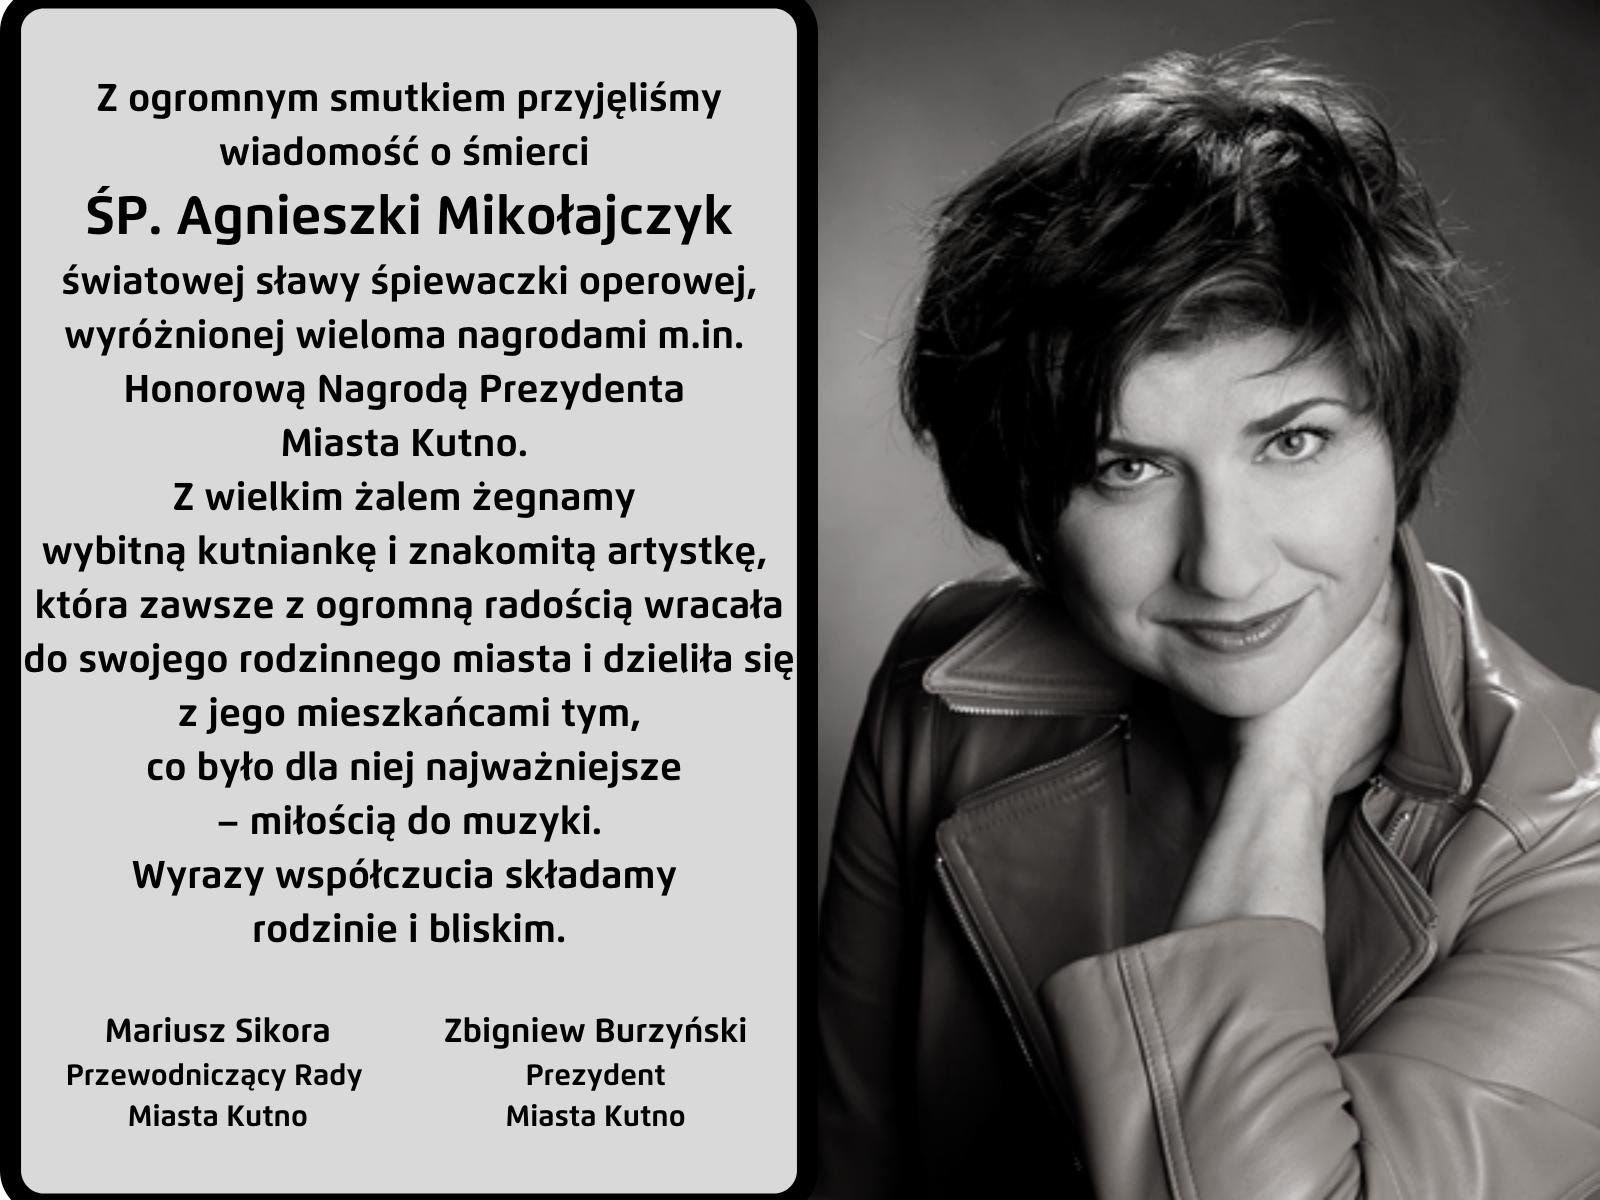 Agnieszka Mikołajczyk